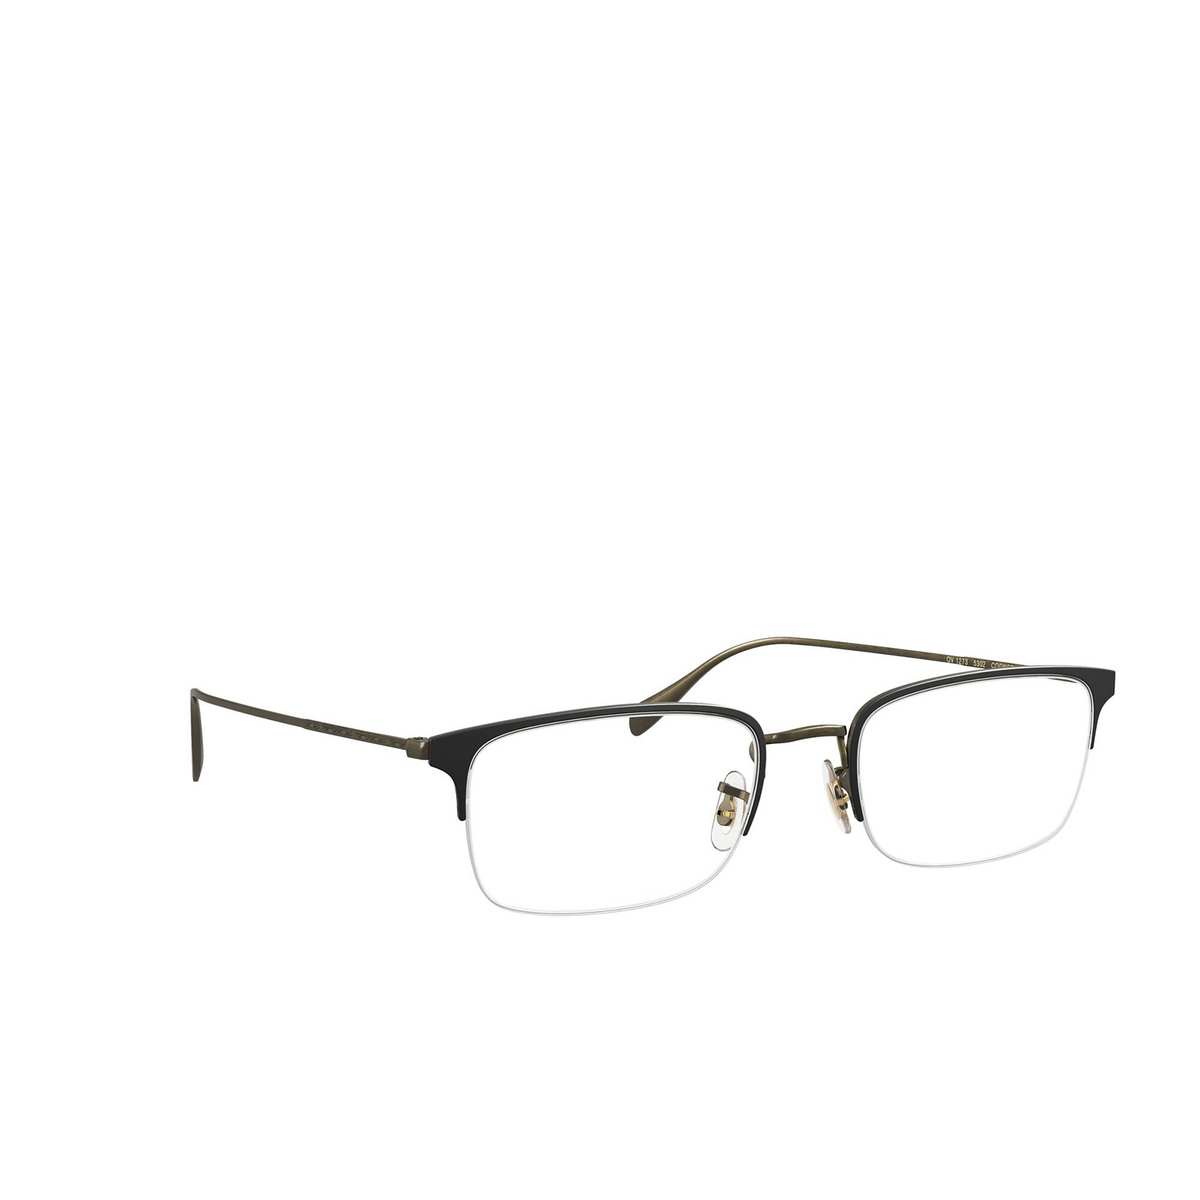 Oliver Peoples® Rectangle Eyeglasses: Codner OV1273 color Matte Black / Antique Gold 5302 - 2/3.